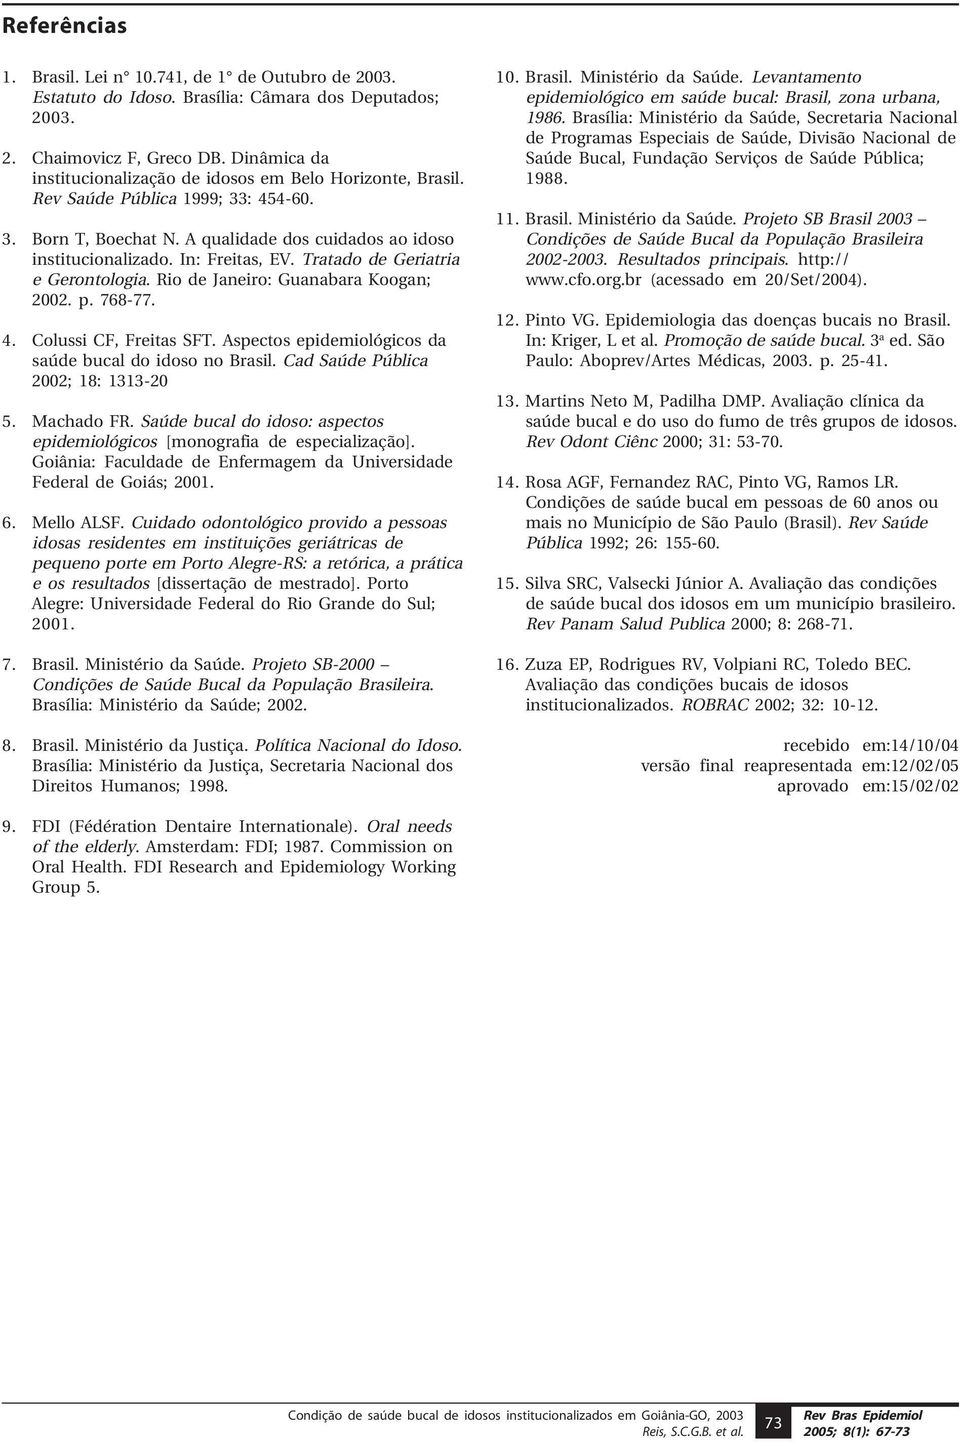 Tratado de Geriatria e Gerontologia. Rio de Janeiro: Guanabara Koogan; 2002. p. 768-77. 4. Colussi CF, Freitas SFT. Aspectos epidemiológicos da saúde bucal do idoso no Brasil.